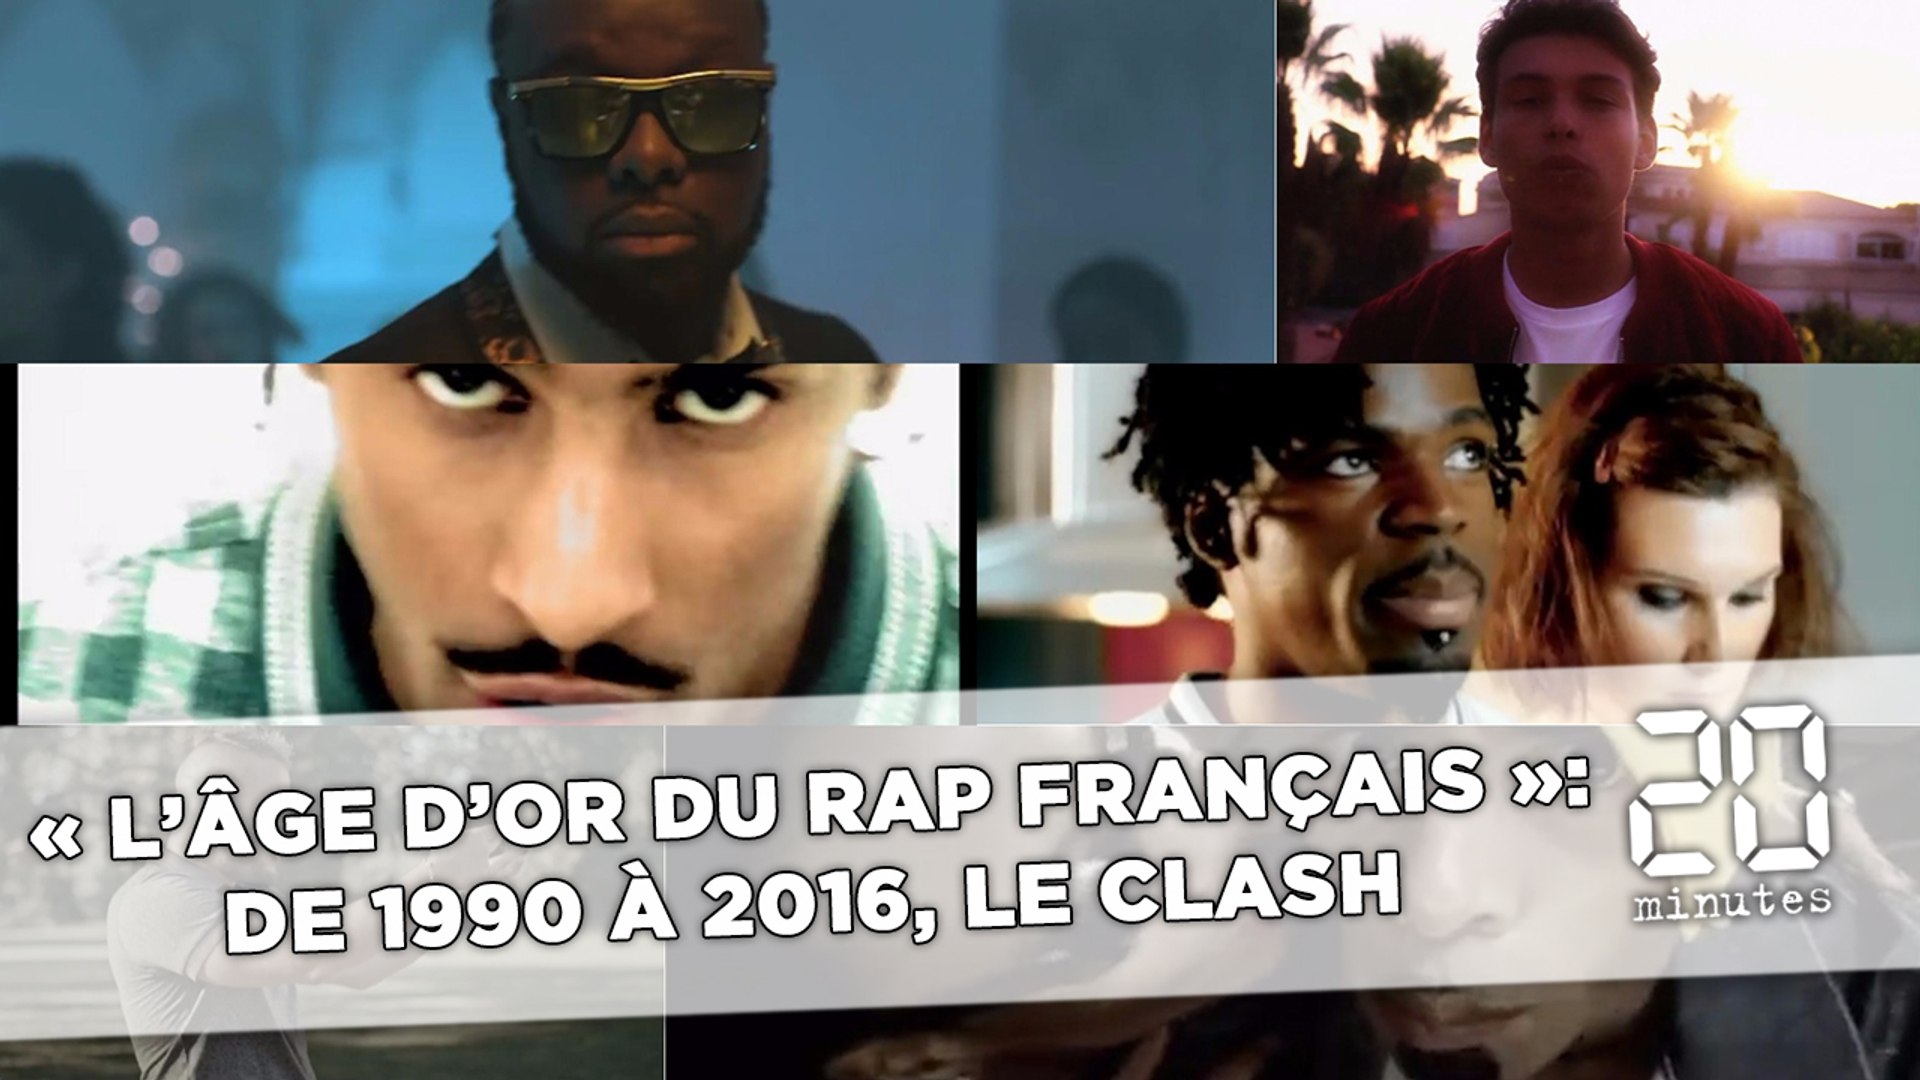 L'âge d'or du rap français »: de 1990 à 2016, le clash - Vidéo Dailymotion